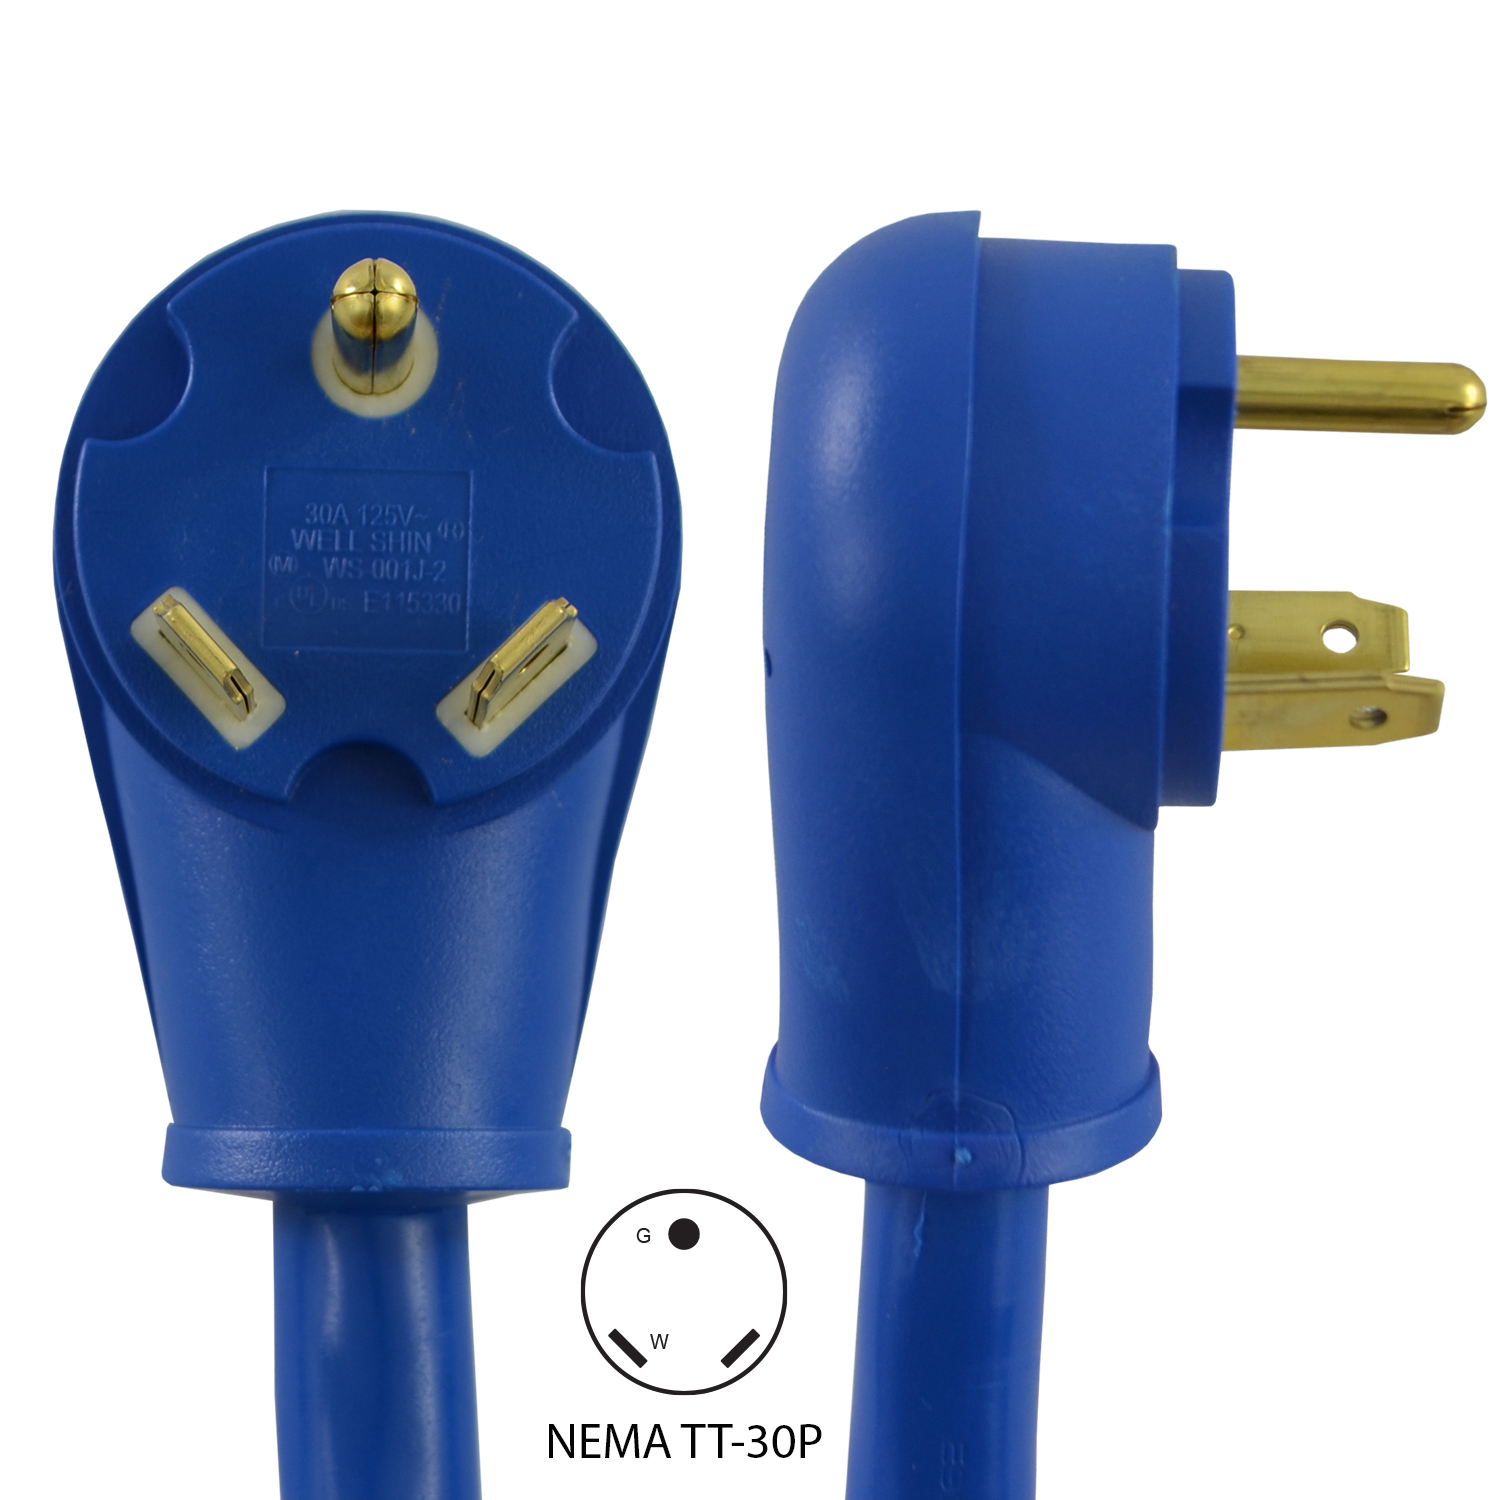 Conntek NEMA TT-30 RV / Generator Extension Cords(Blue)